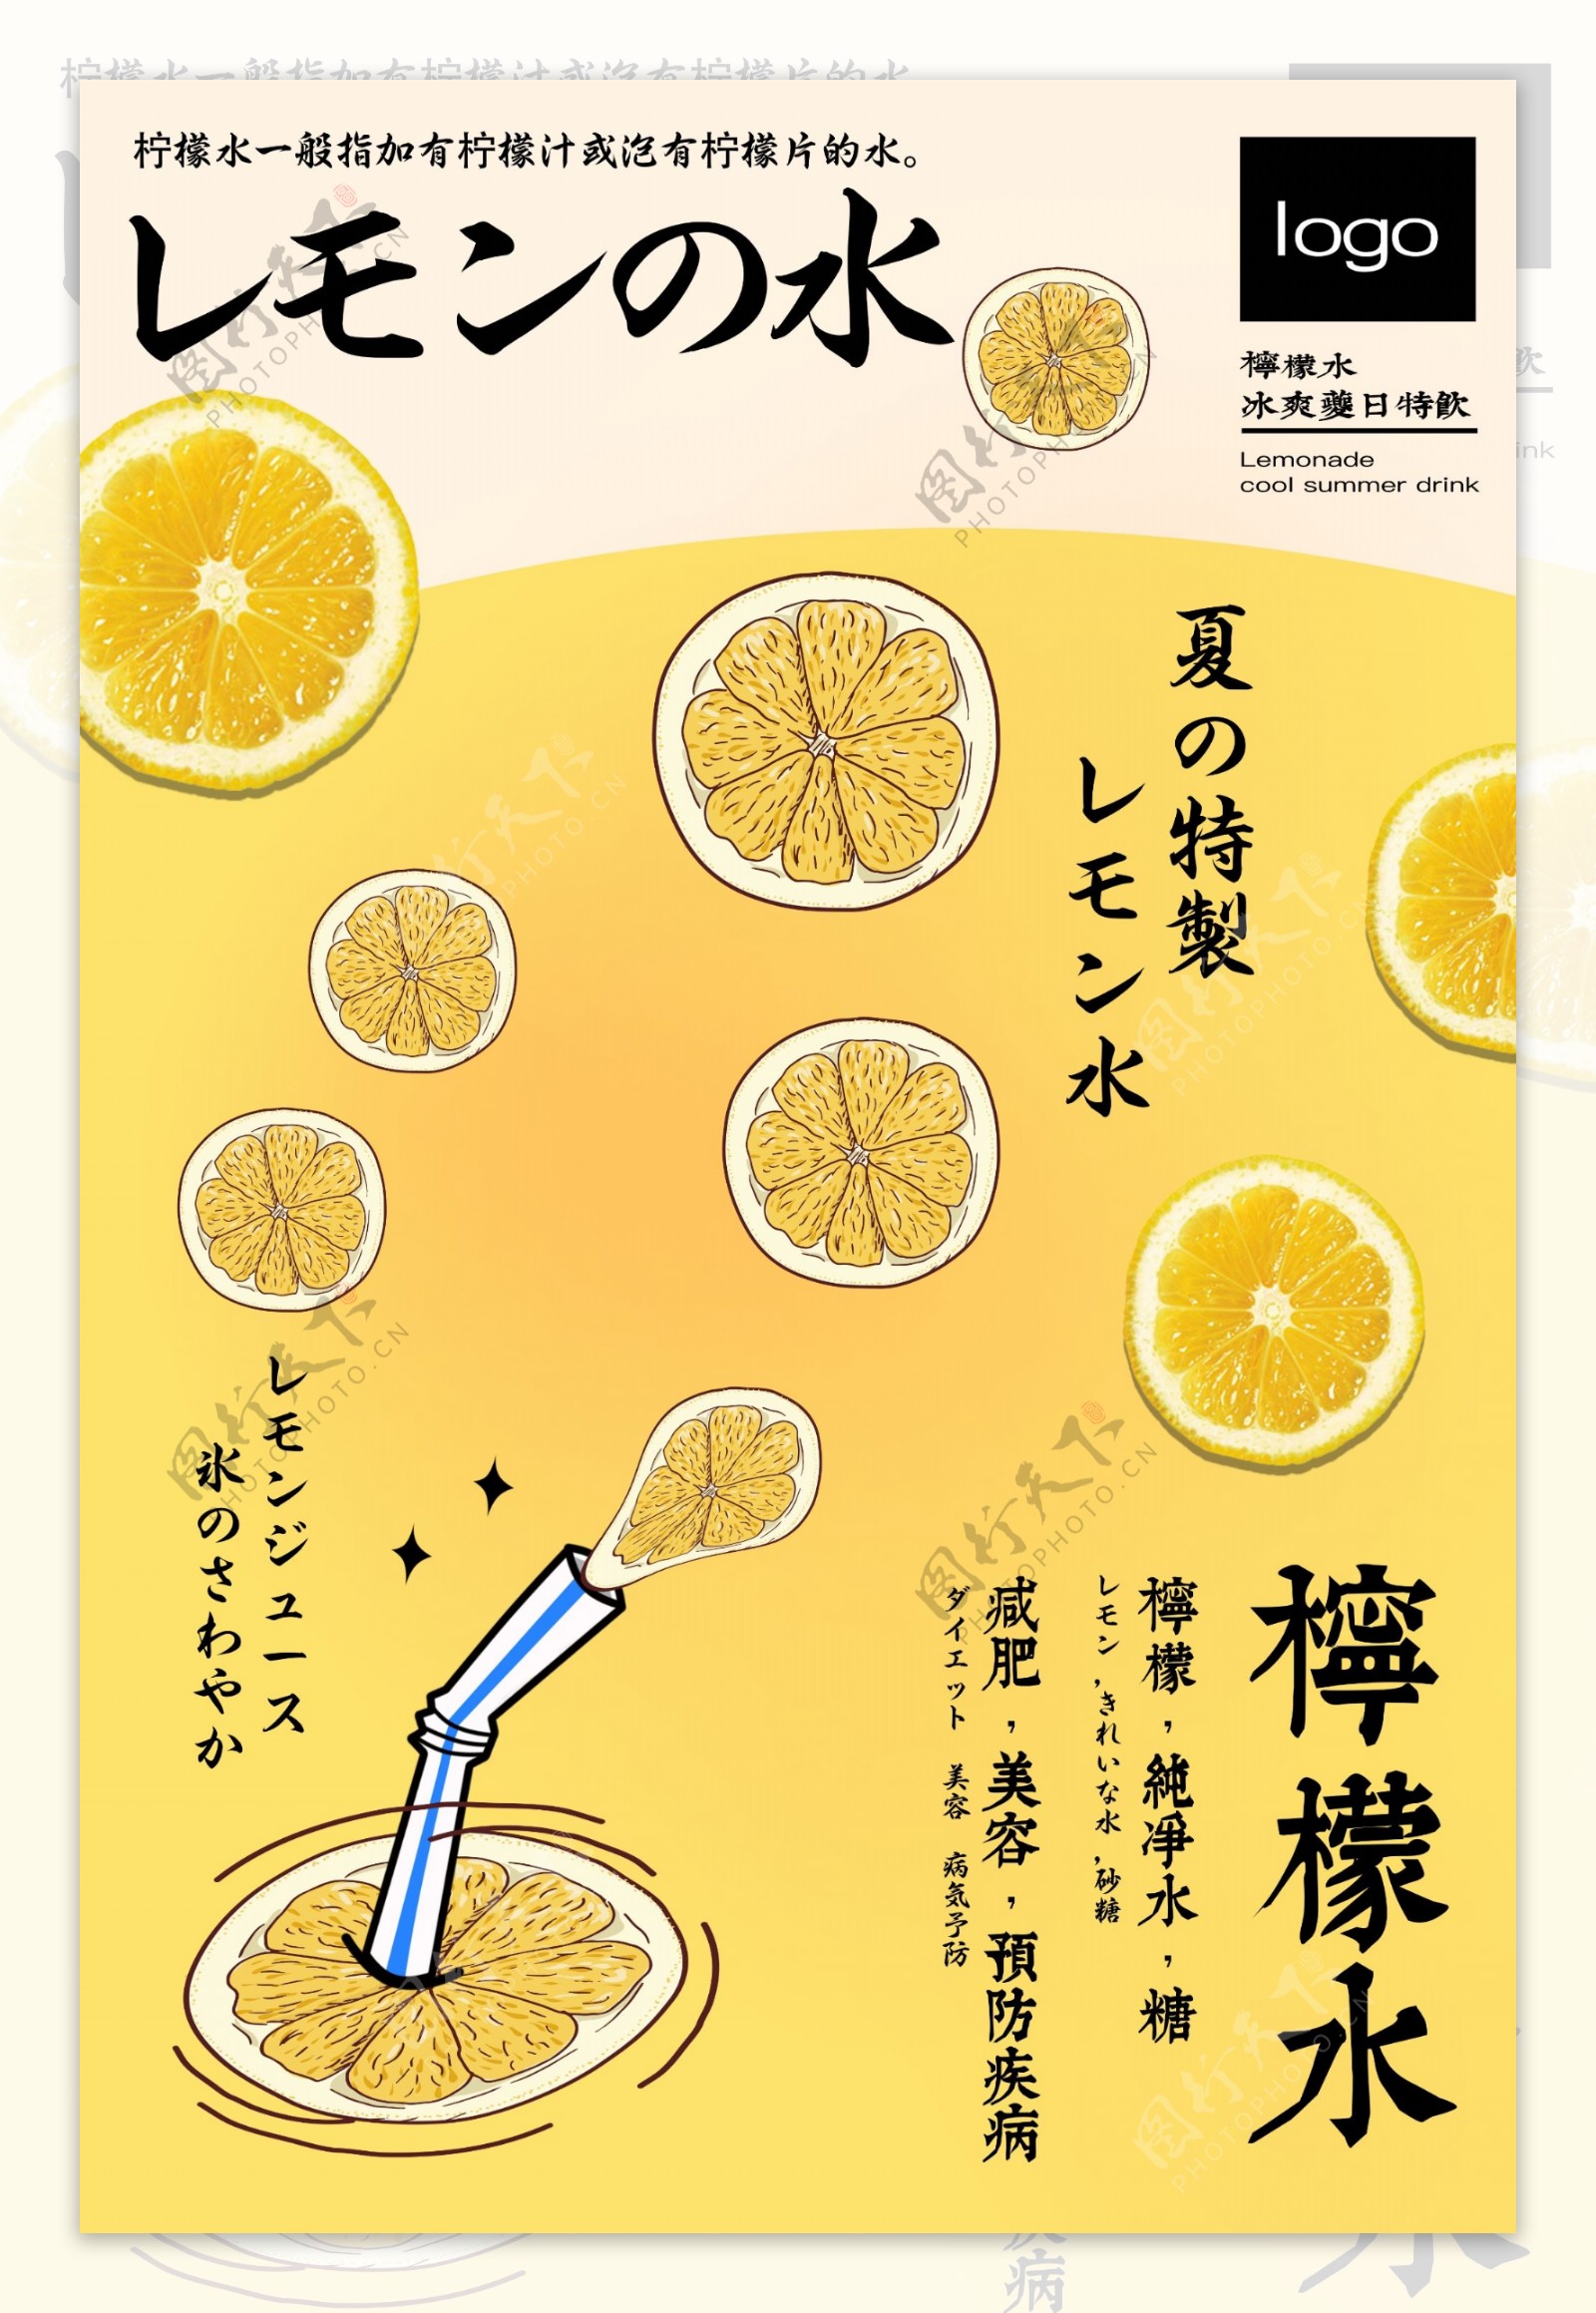 柠檬水夏季促销广告